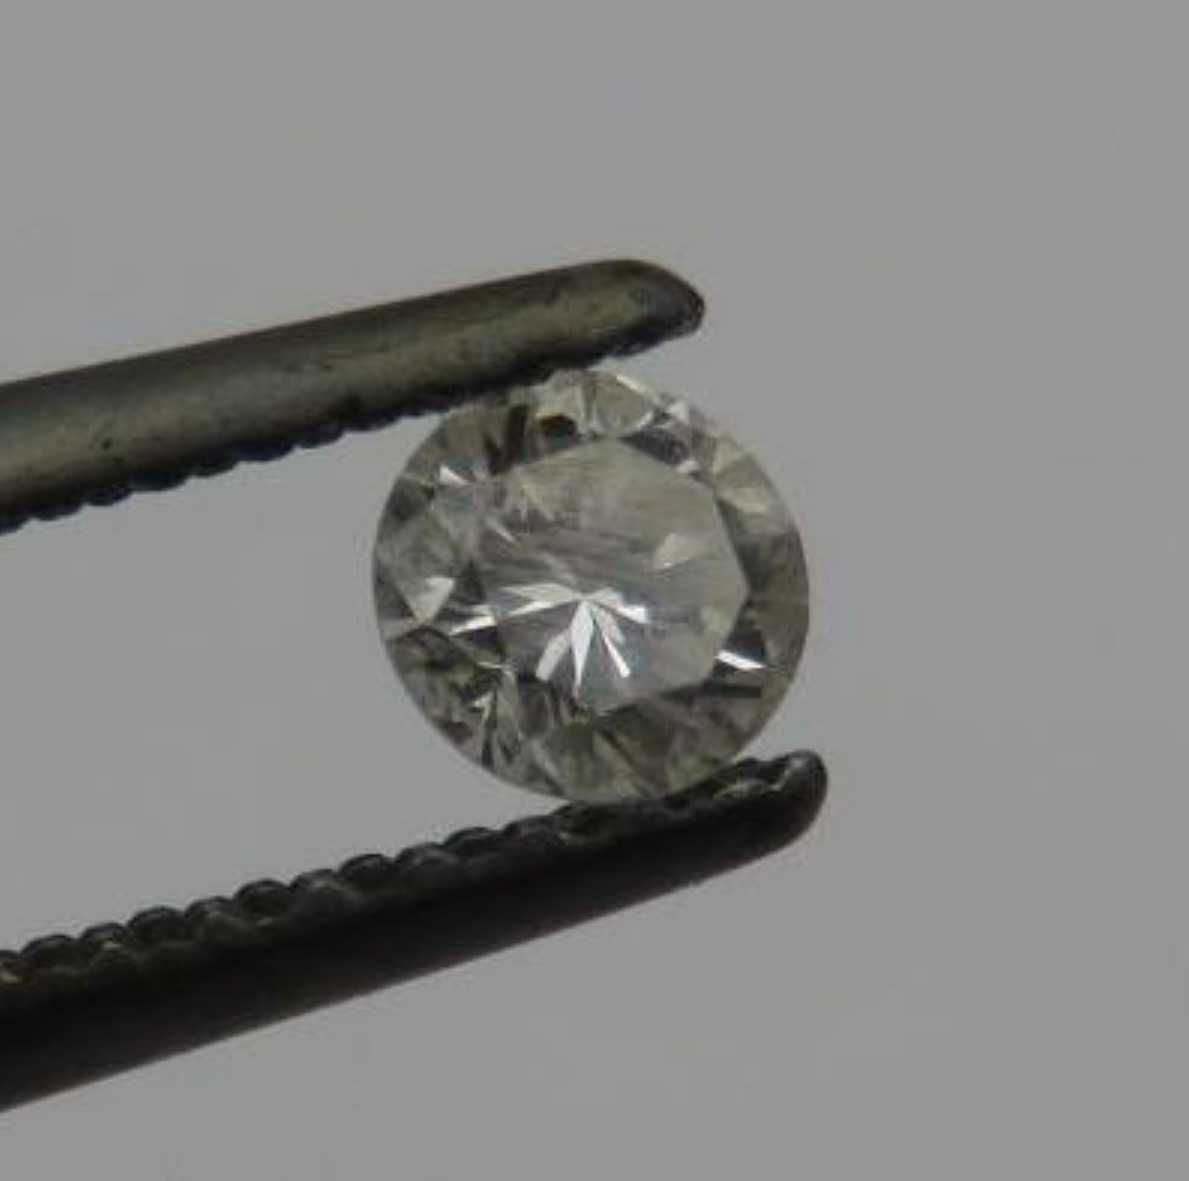 Round brilliant cut diamond of 0.16 carat